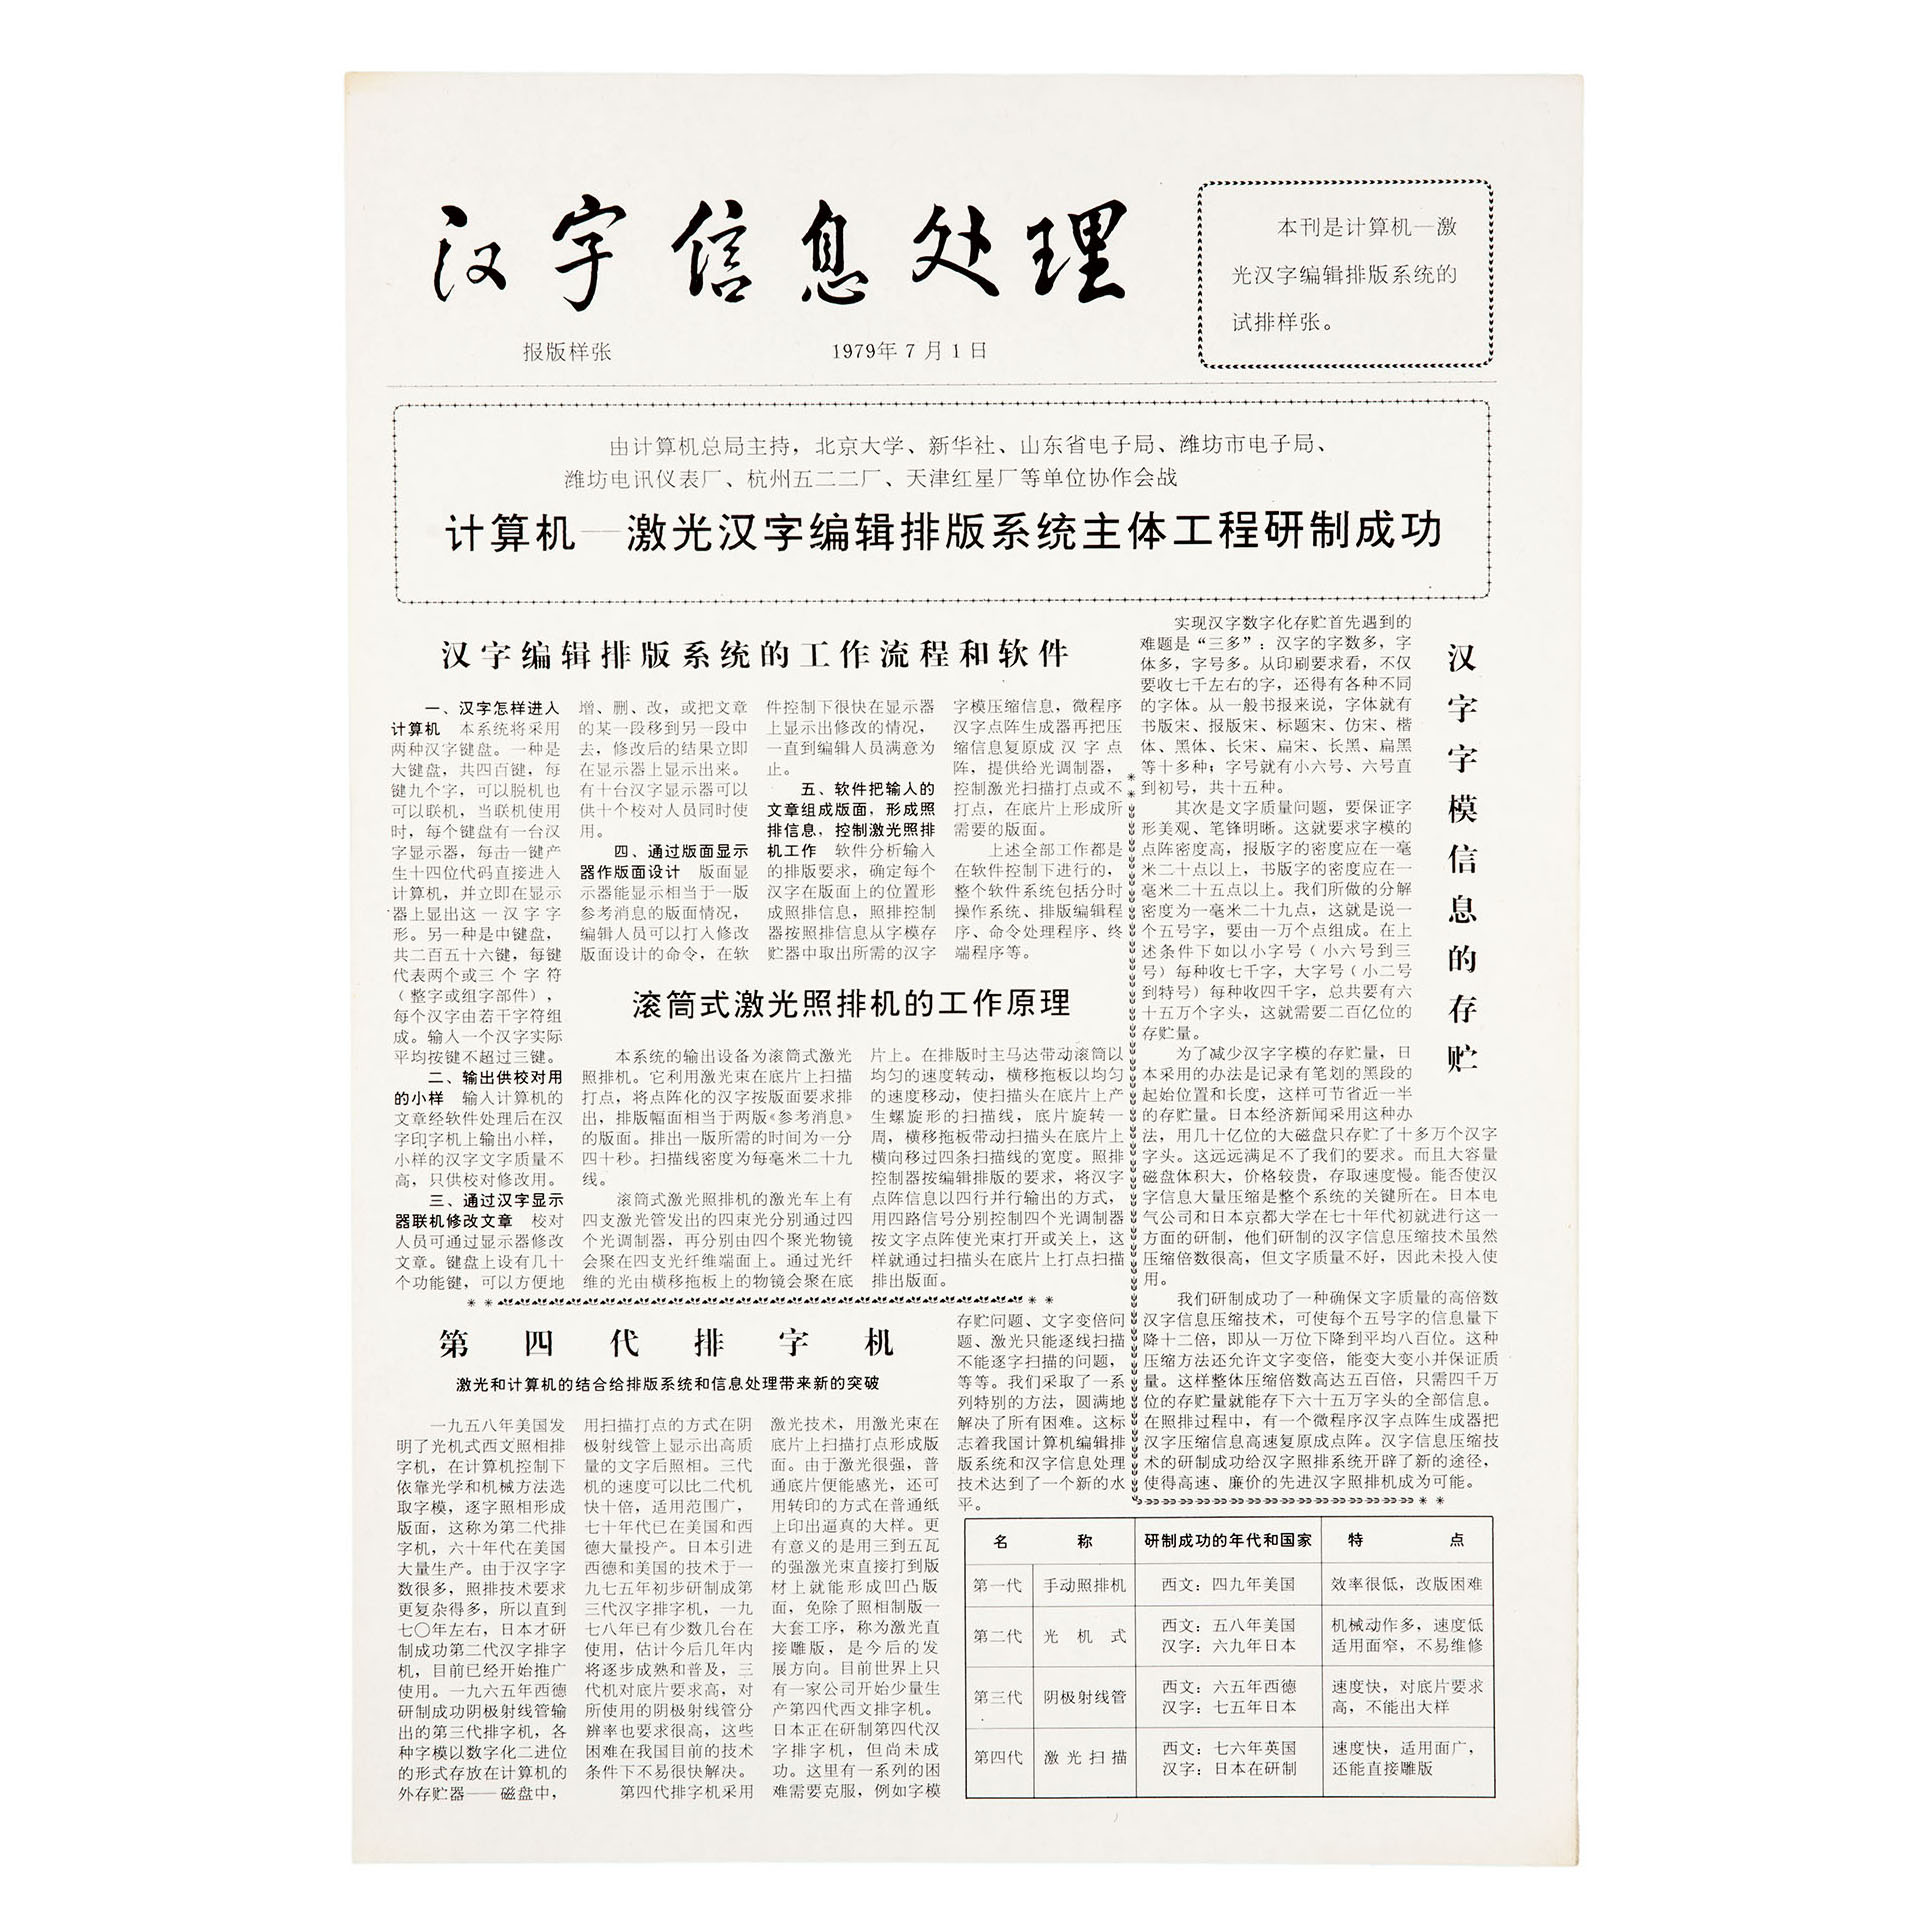 汉字激光照排系统原理性样机输出的第一张《汉字信息处理》报版样张